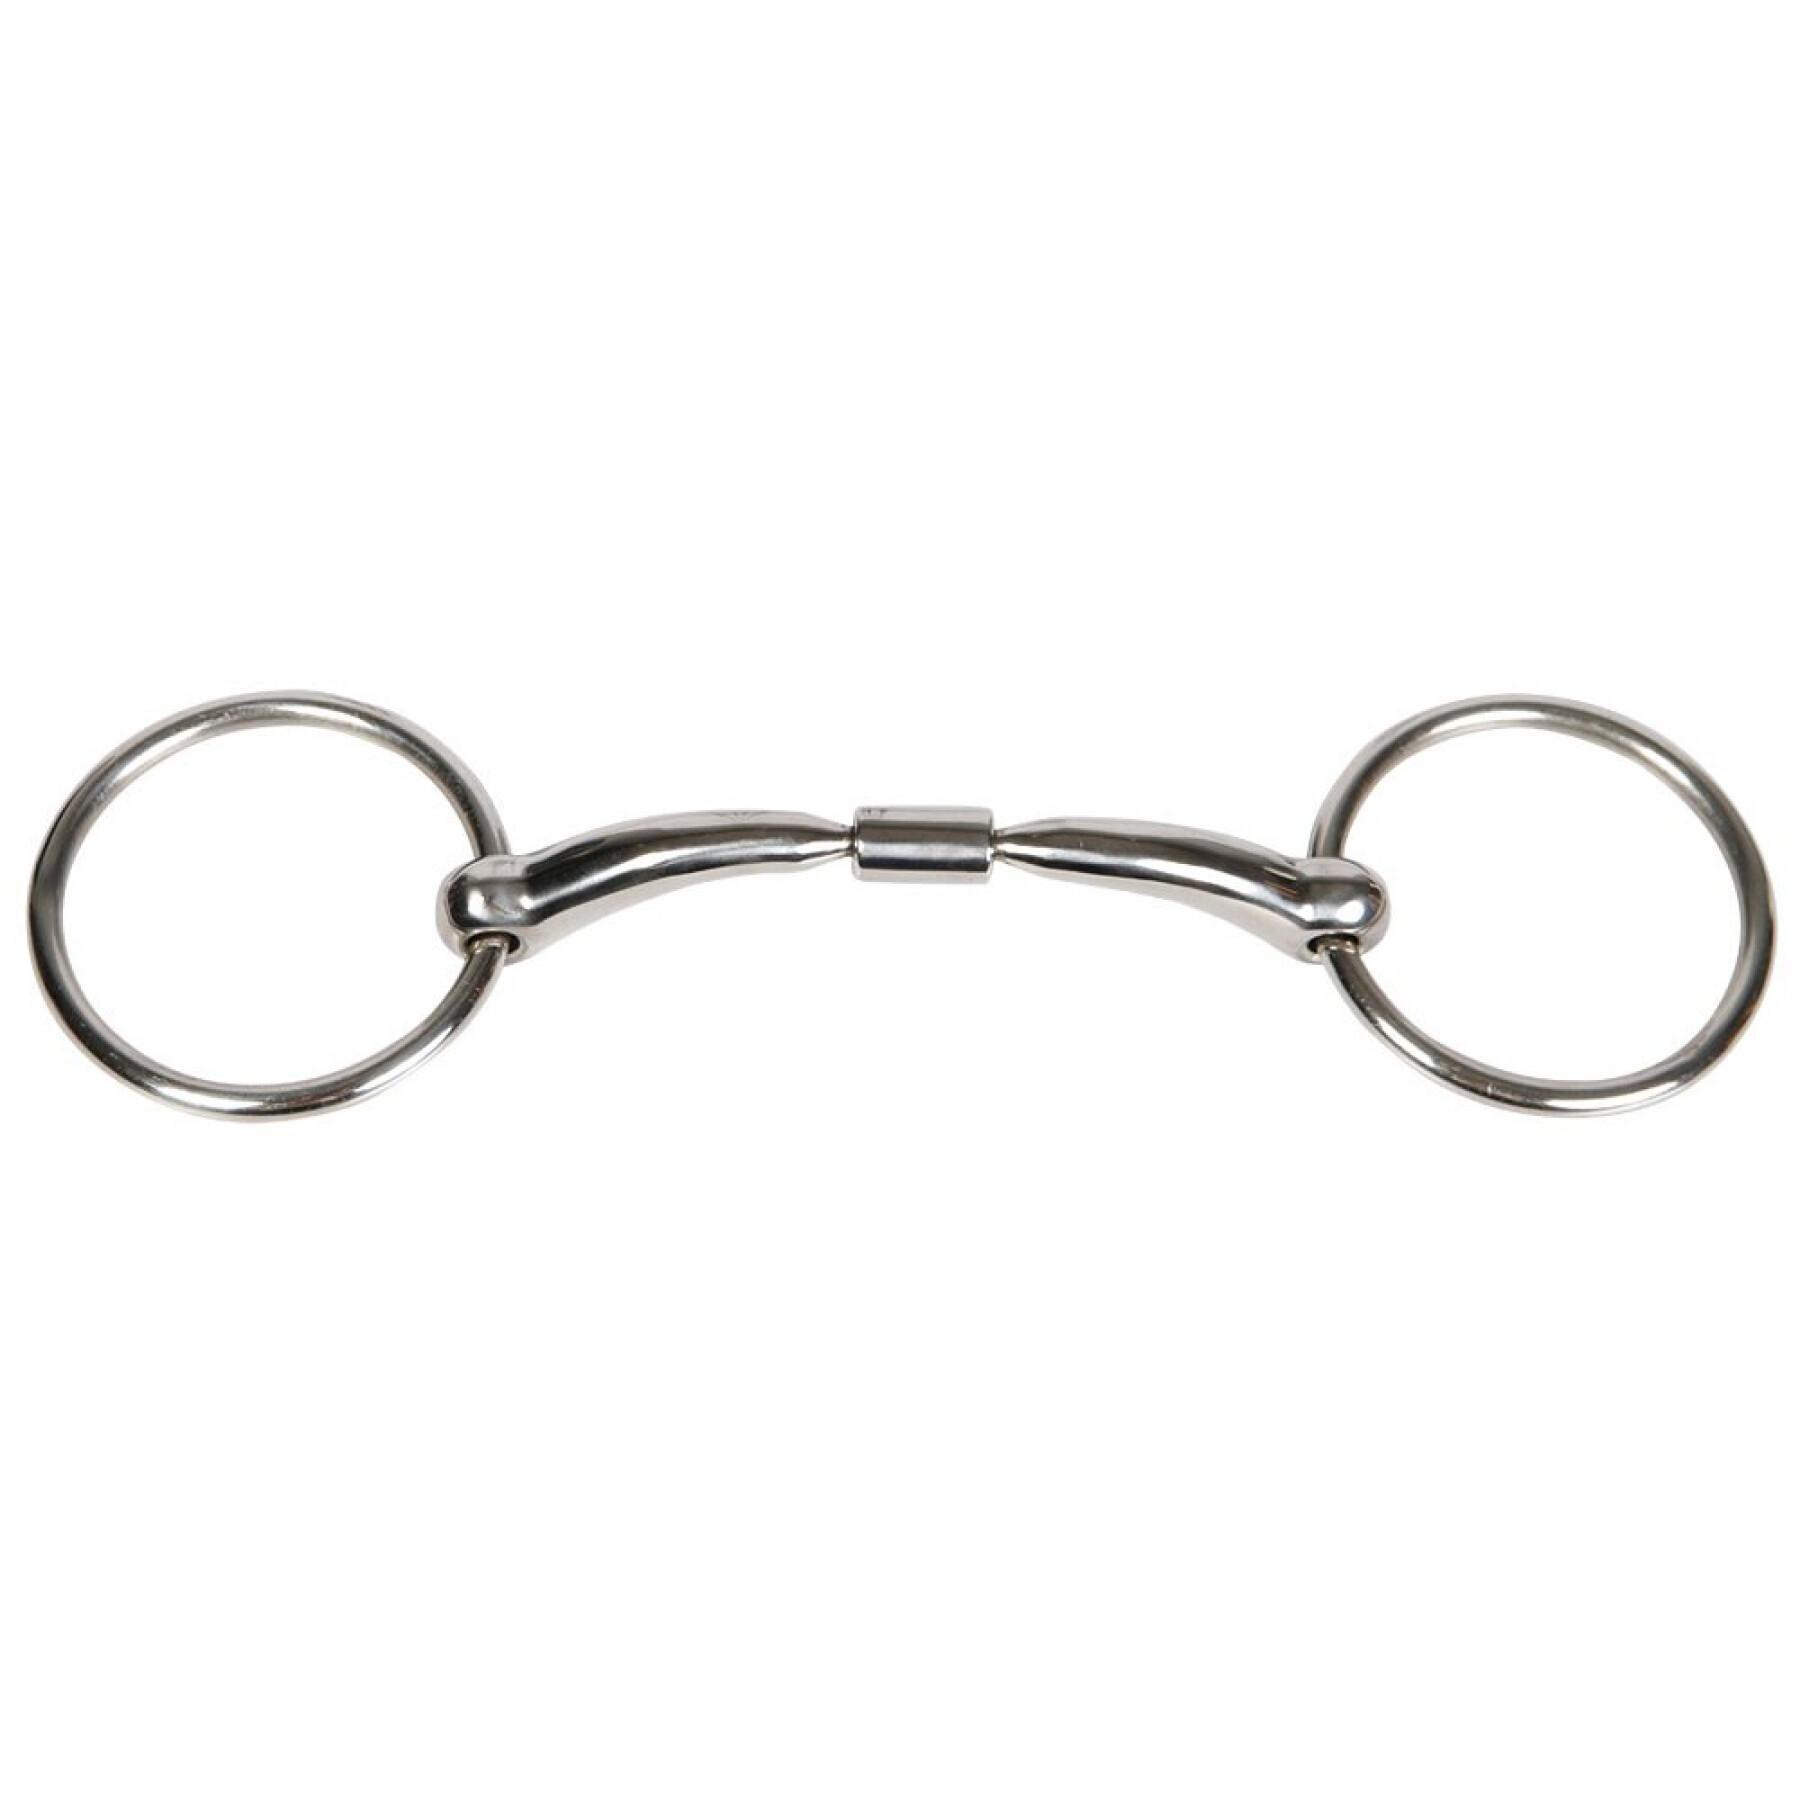 Mors 2 anneaux pour cheval double brisure anatomique Harry's Horse Roll-R